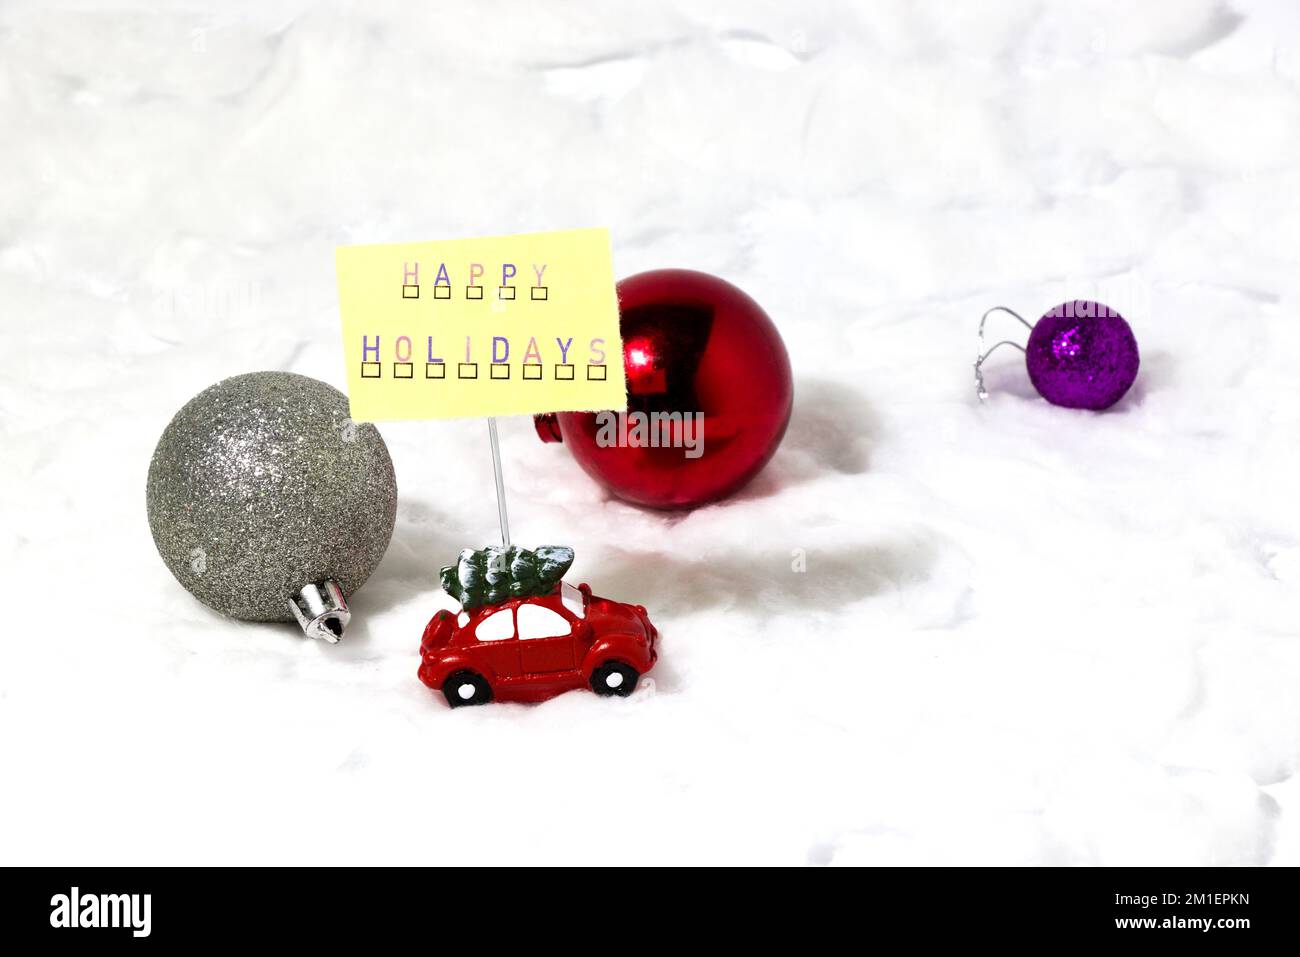 voiture avec carte happy holidays, conduite après des décorations sur la neige, concept de vacances créatif Banque D'Images